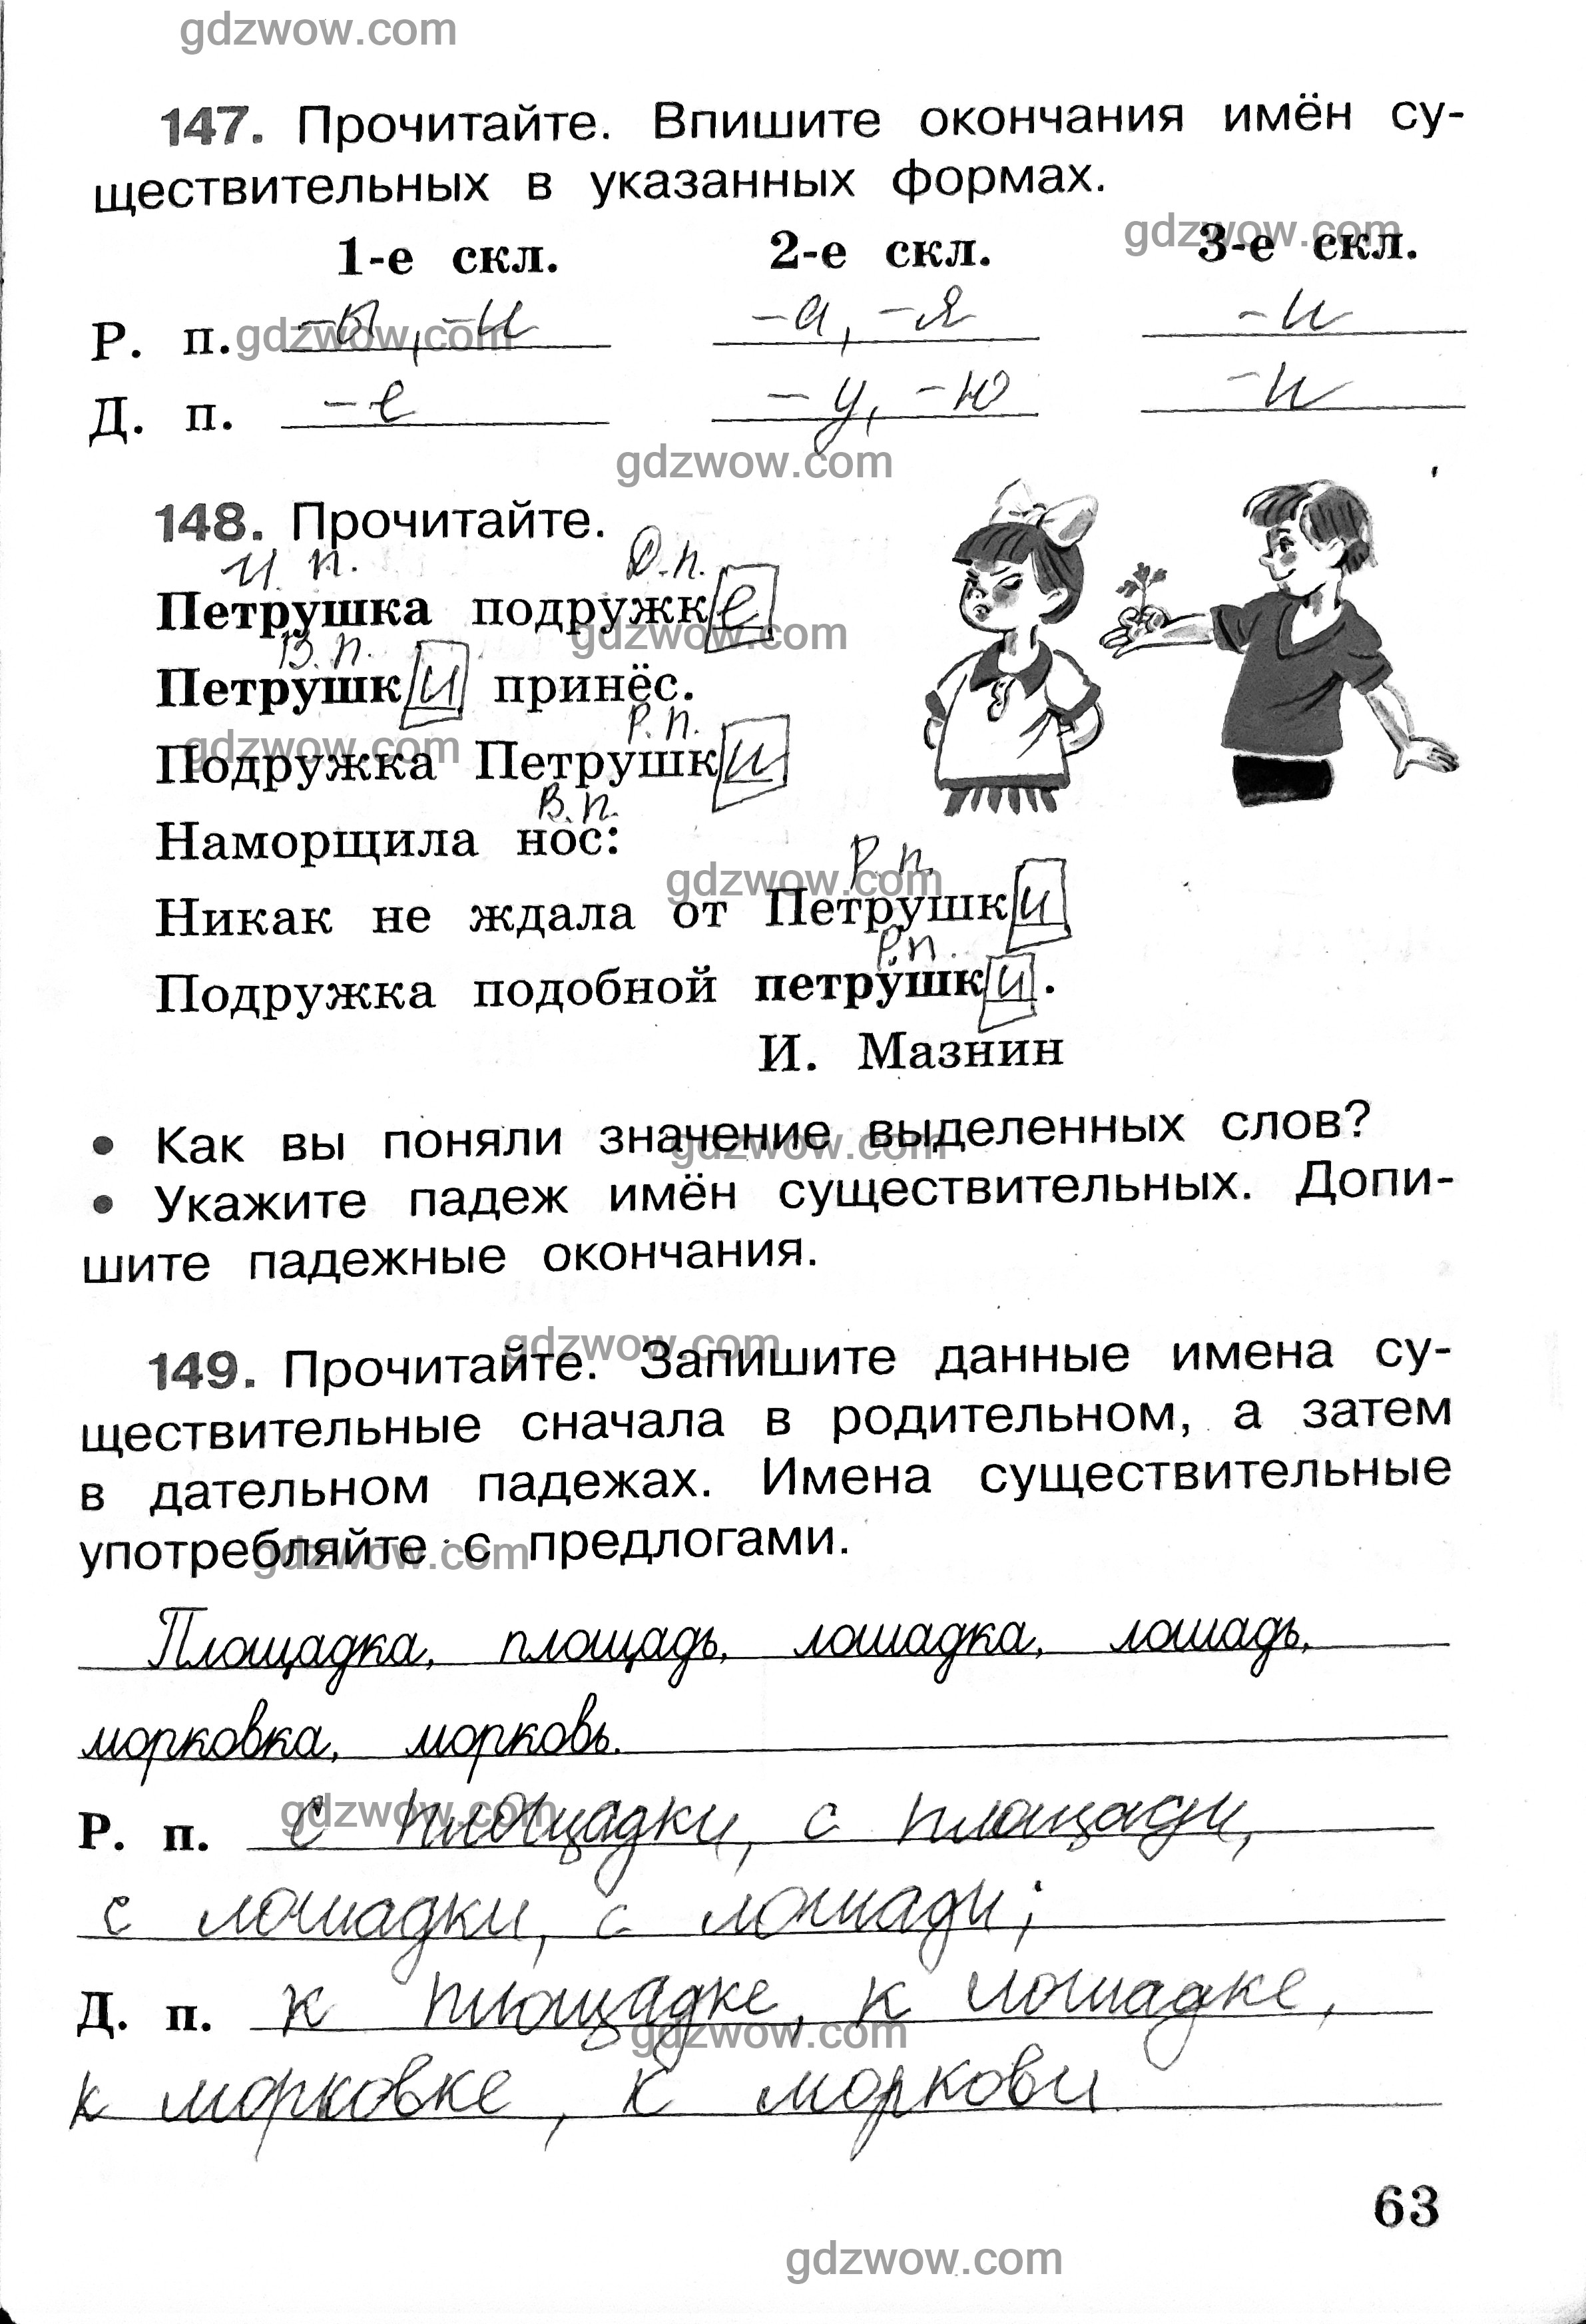 Русский язык 4 класс учебник Канакина, Горецкий часть 1 и 2